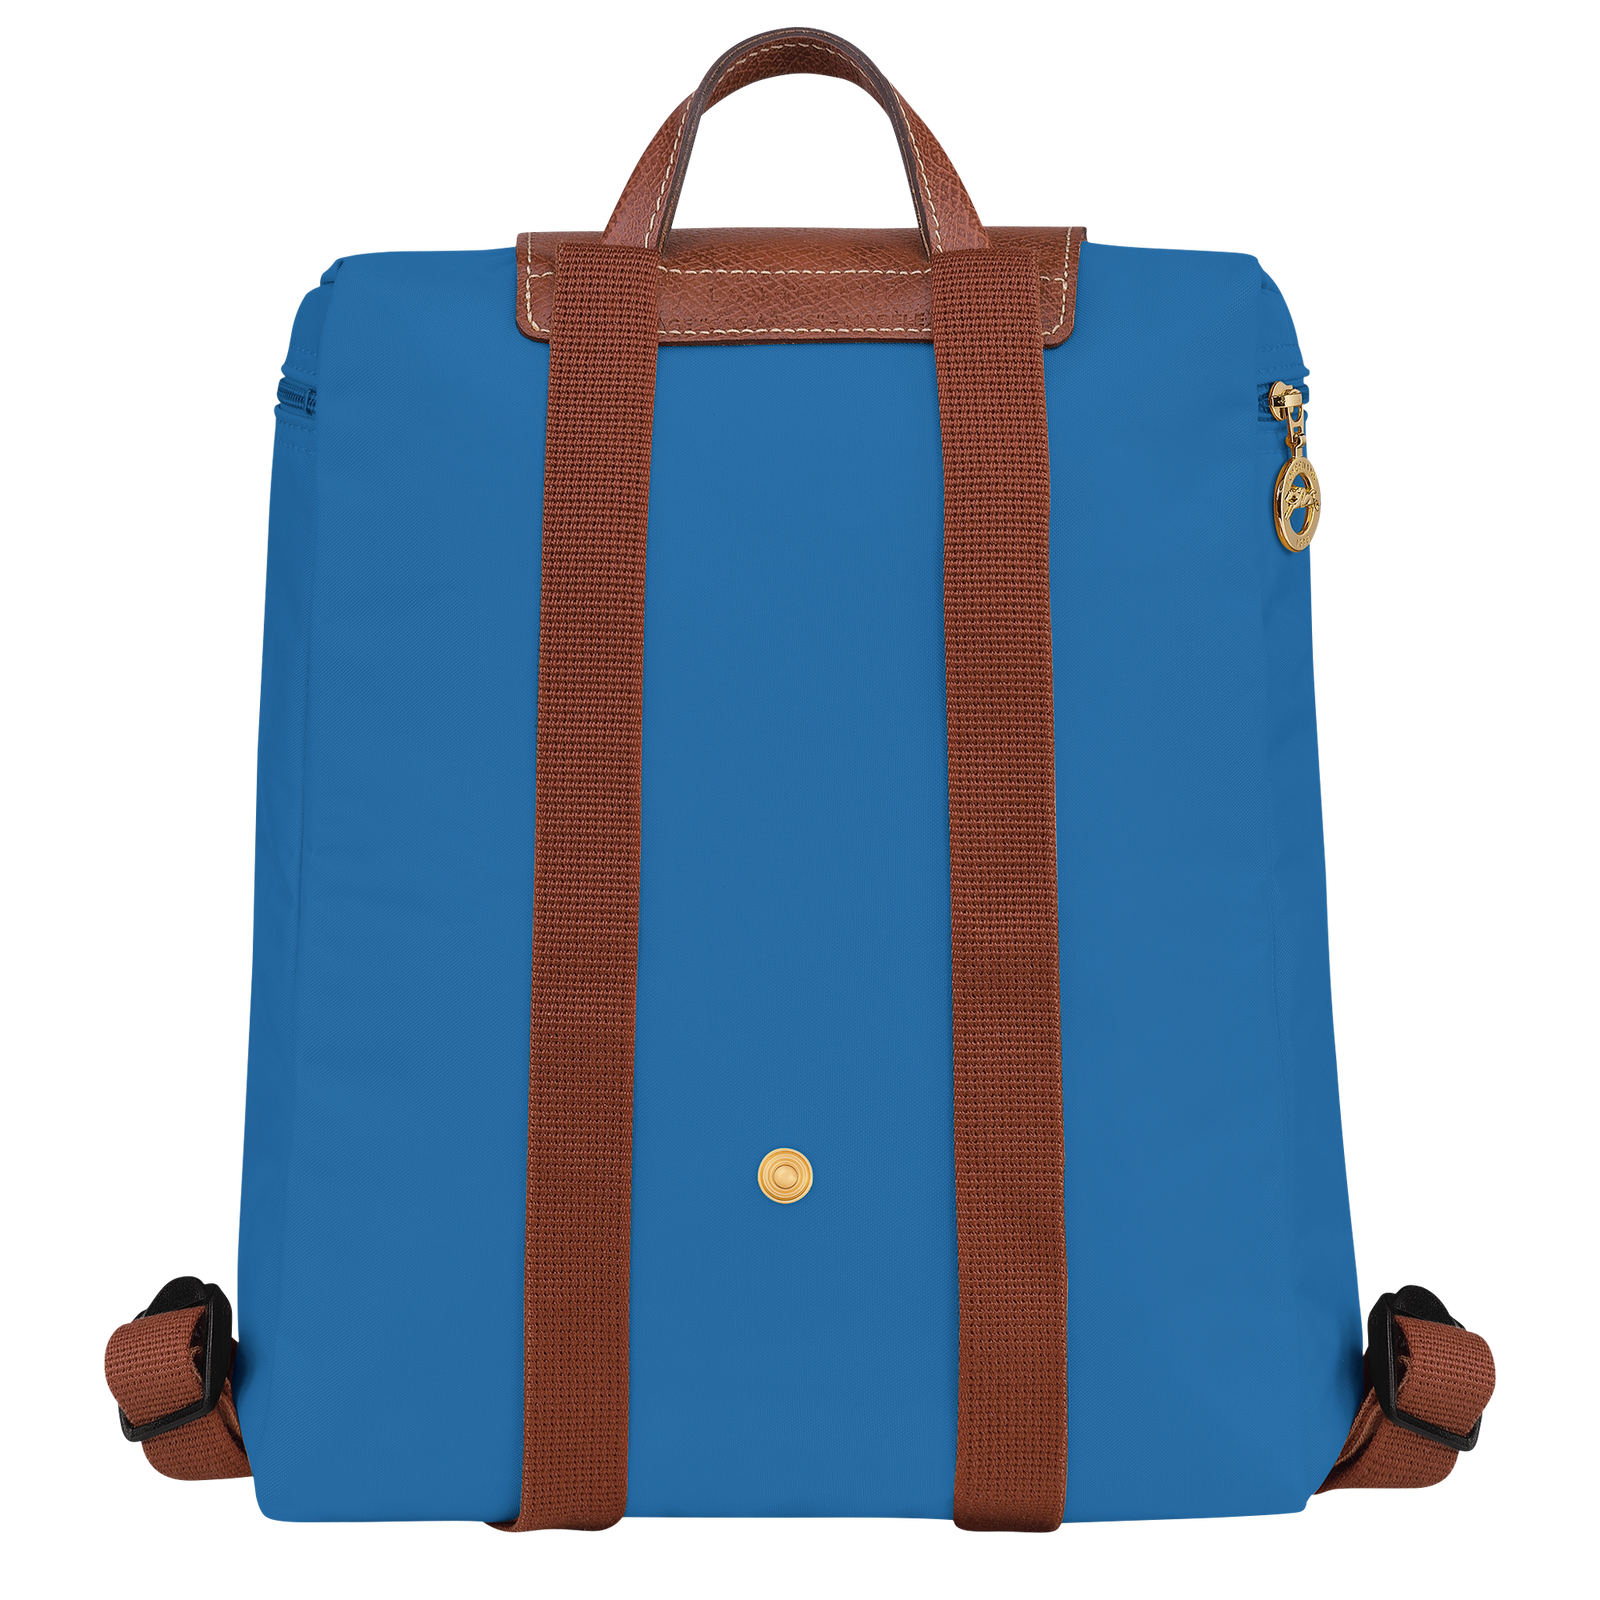 Le pliage original m backpack cobalt